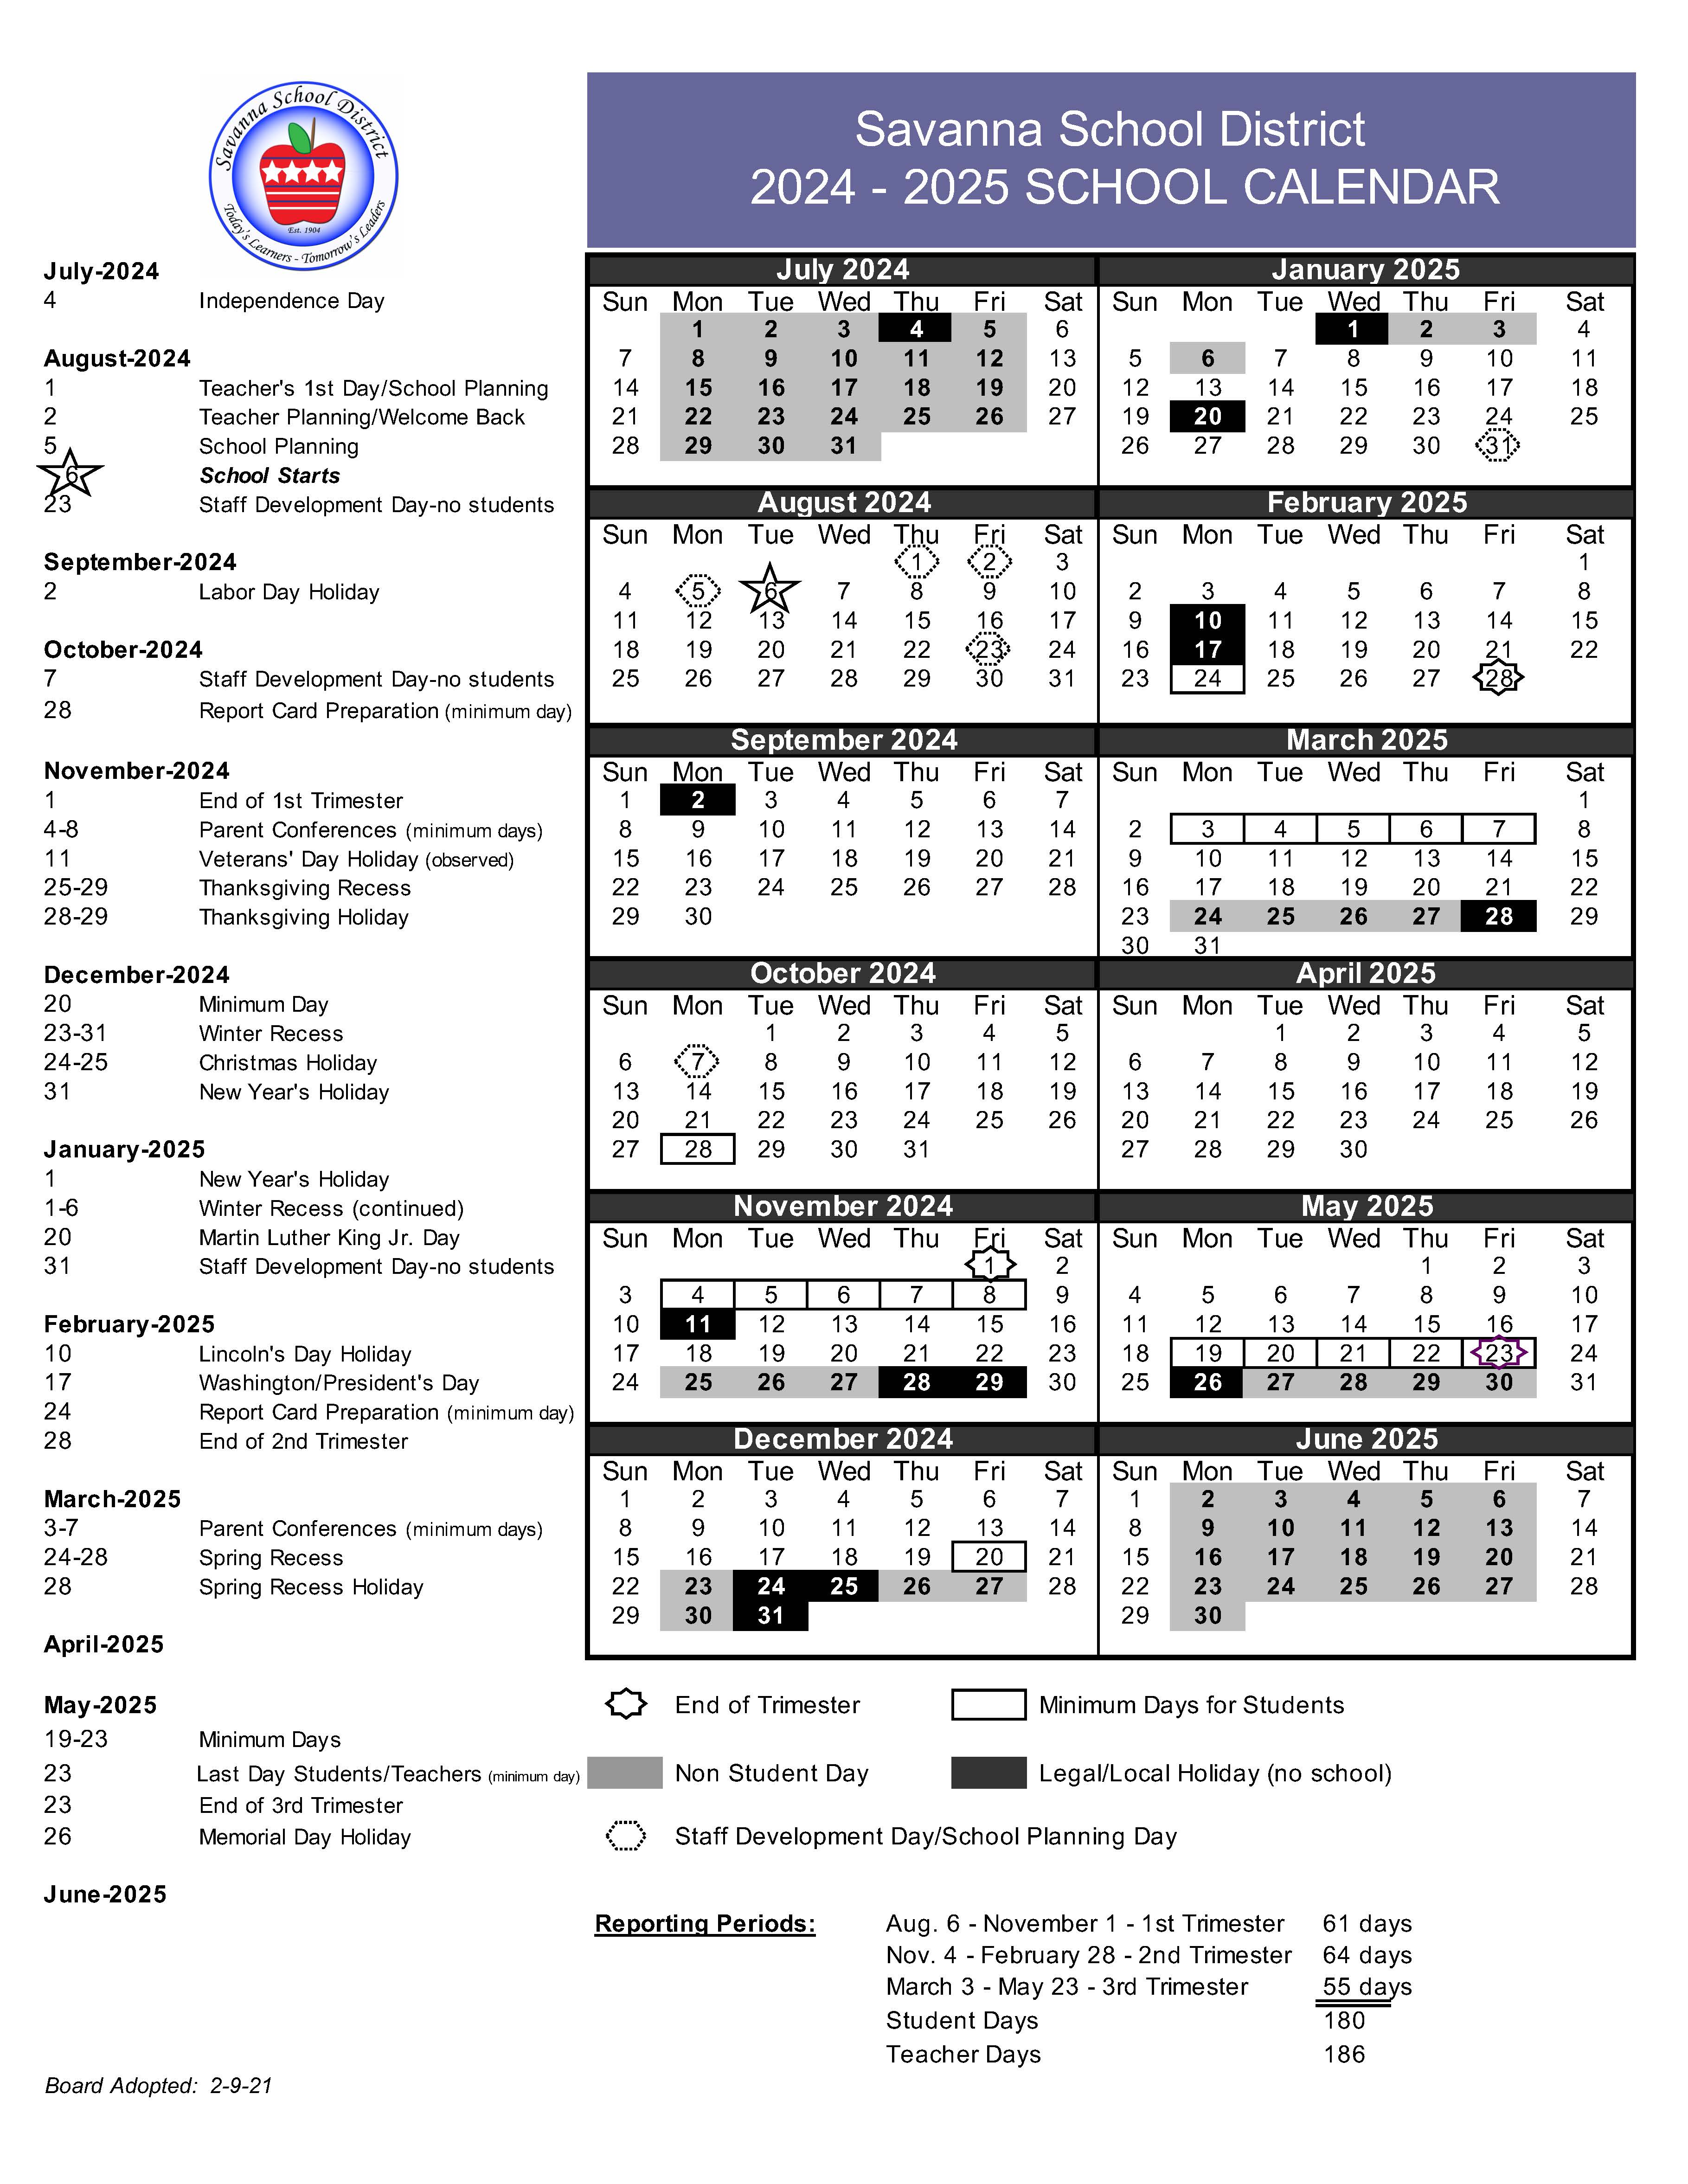 kennesaw-spring-2024-calendar-dec-2022-calendar-precision